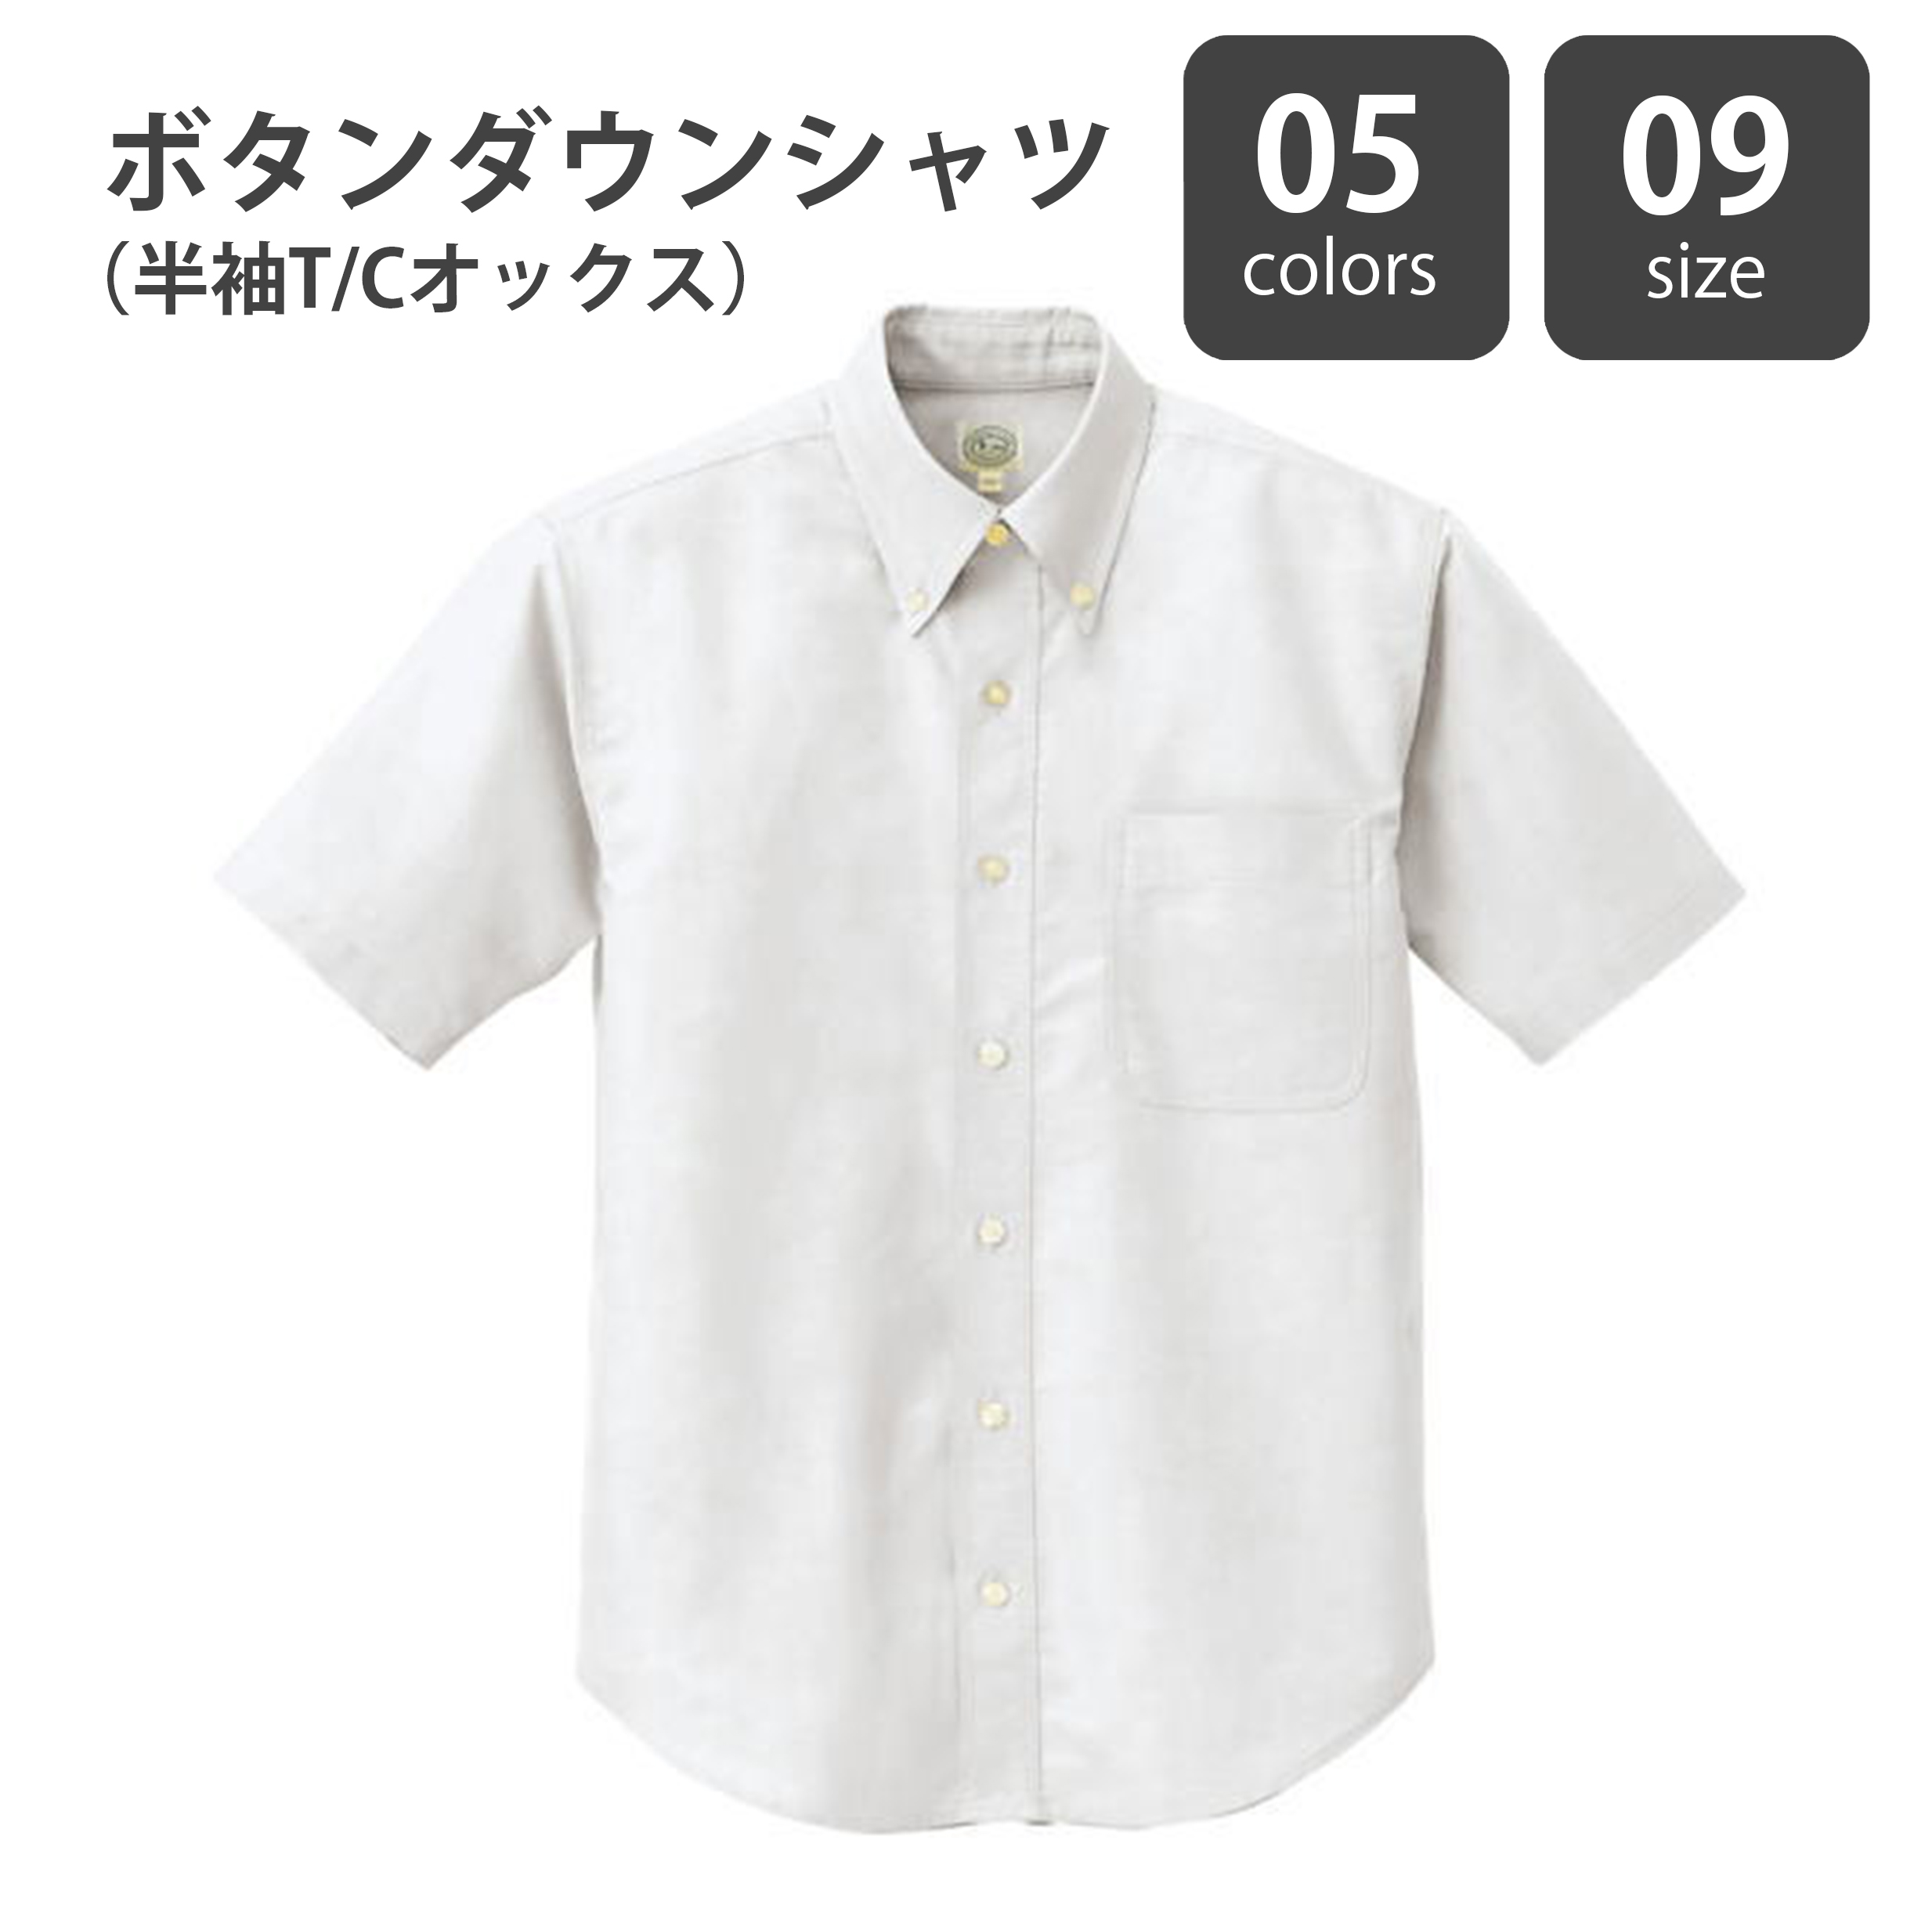 ボタンダウンシャツ（半袖T/Cオックス）ST-AZ7822